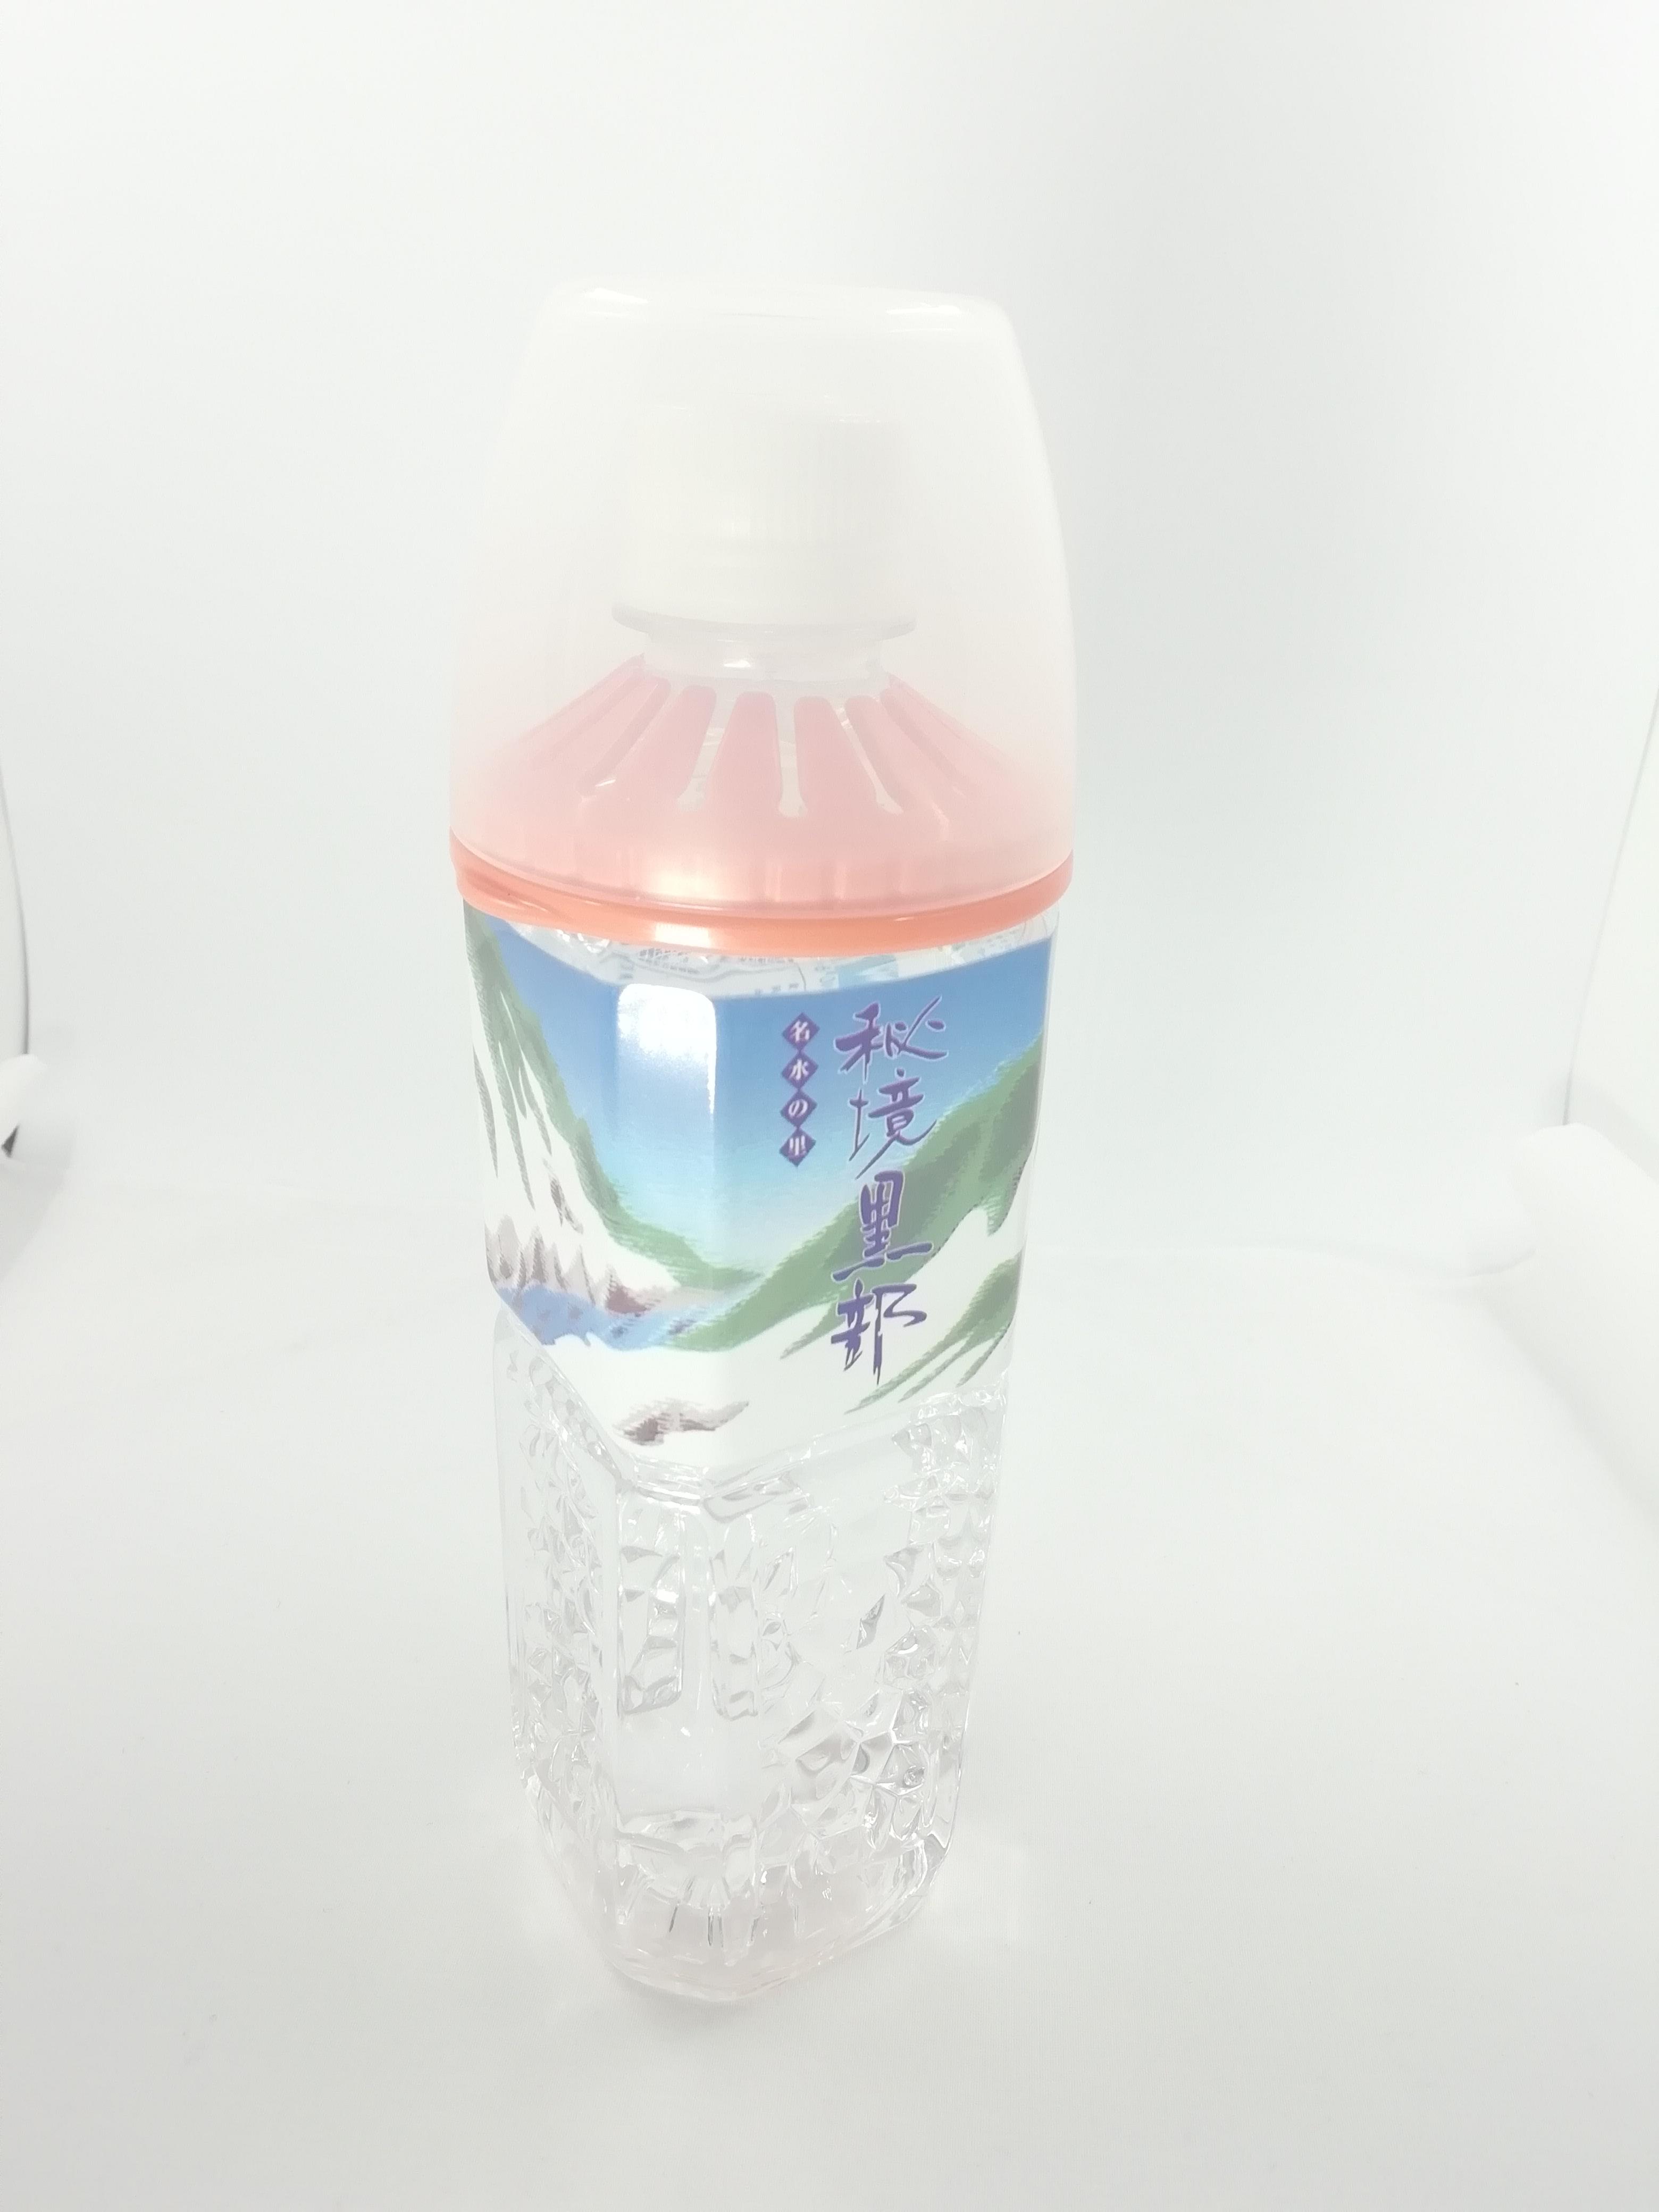 ペットボトルの口に付けるコップ ペットボトル用コップ ピンクのレビュー ジグソー レビューメディア